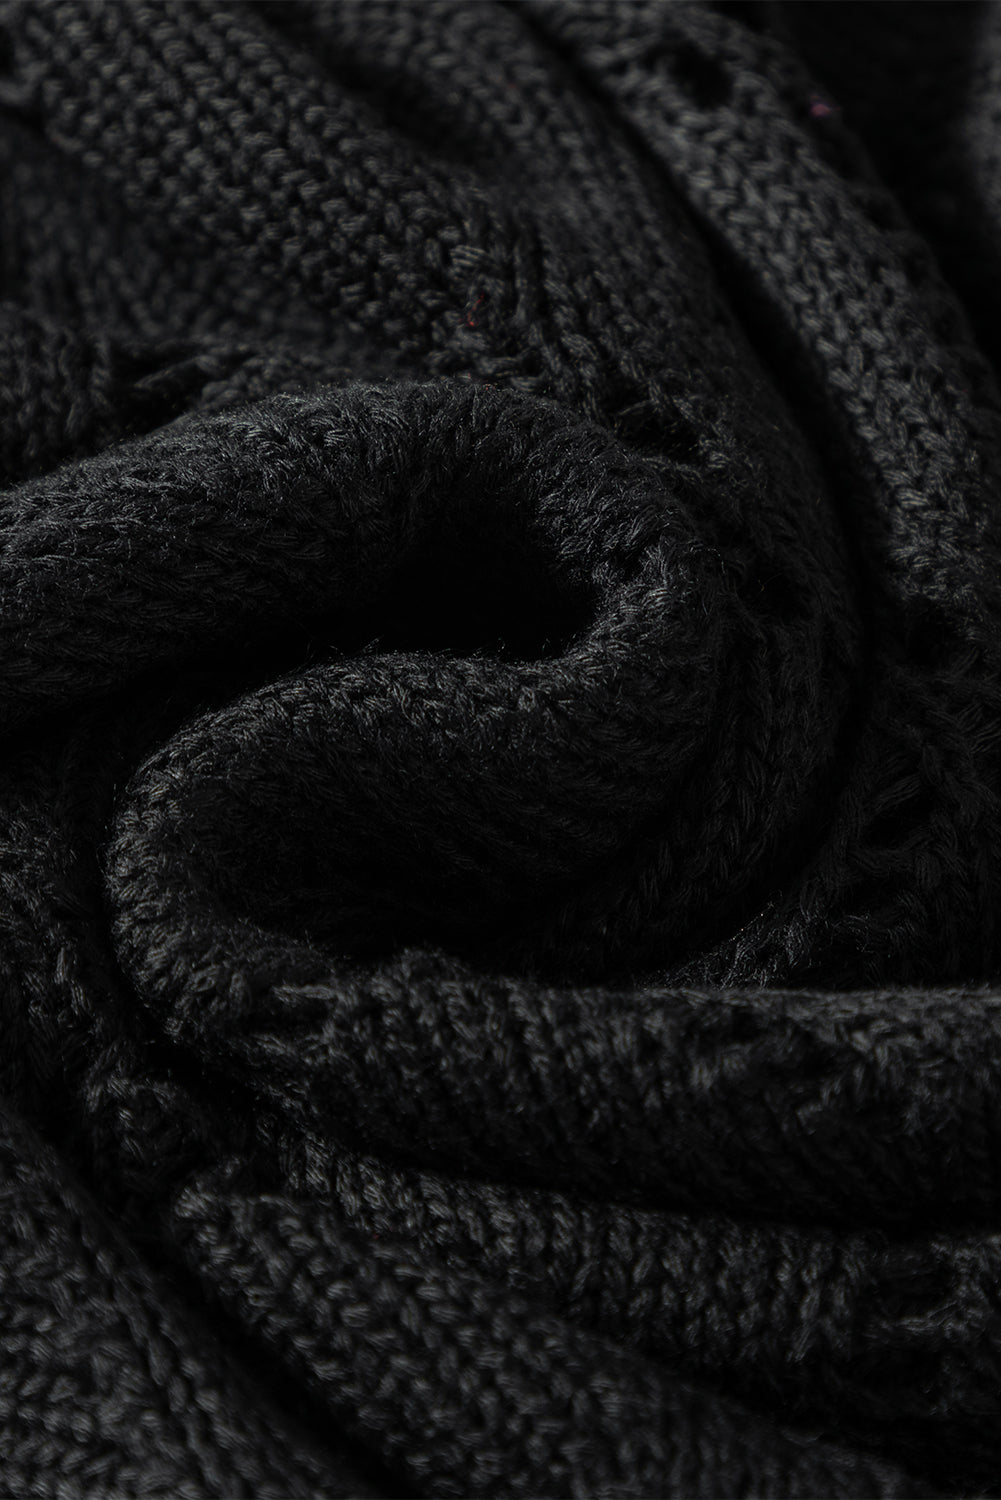 Črn eleganten pulover z rokavi v obliki romba